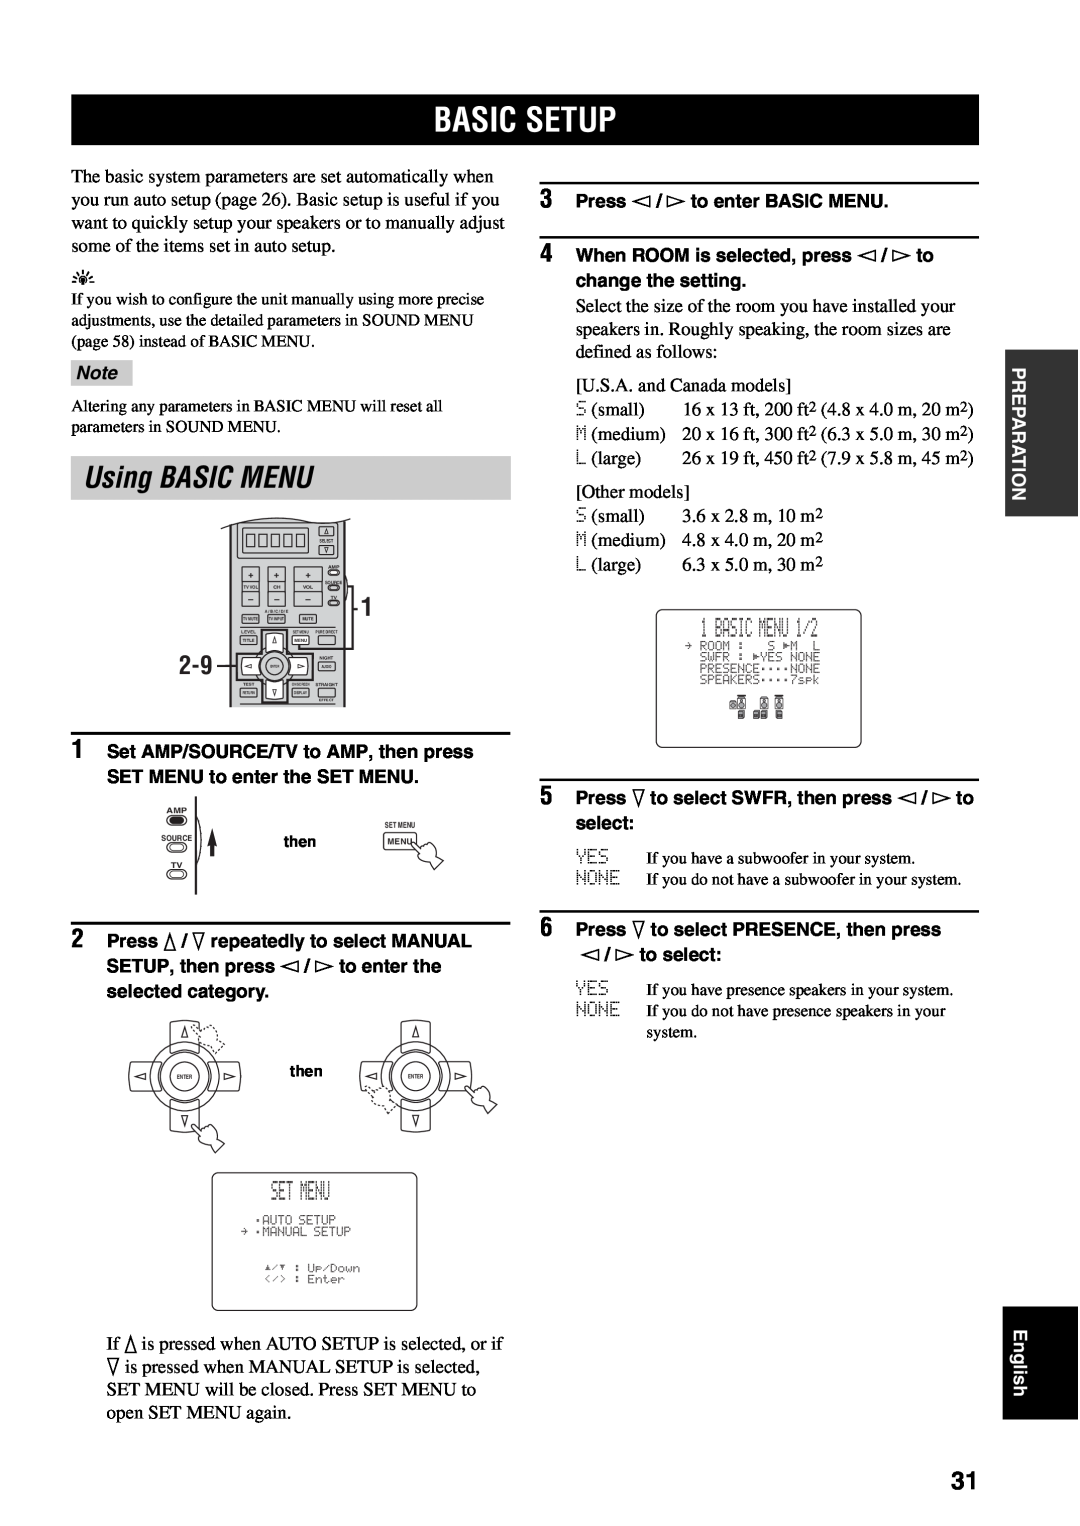 Yamaha RX-V1500 owner manual Basic Setup, Using BASIC MENU, BASIC MENU 1/2, Set Menu 